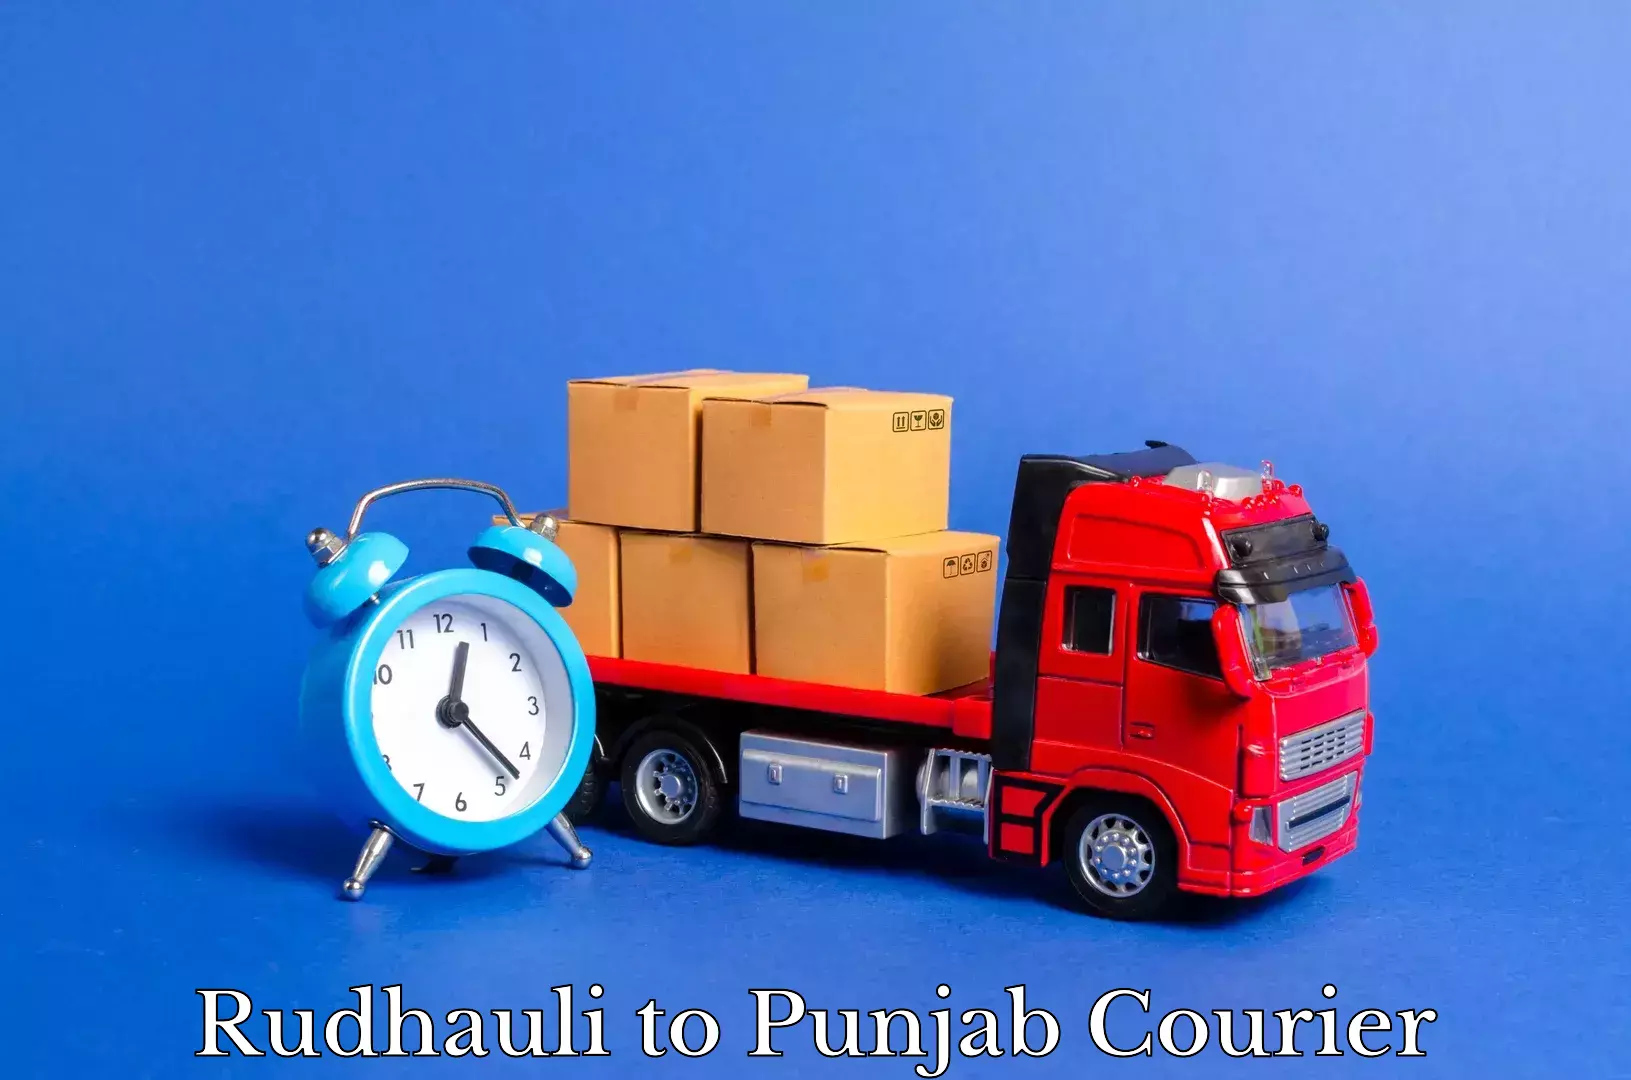 Furniture moving experts Rudhauli to Punjab